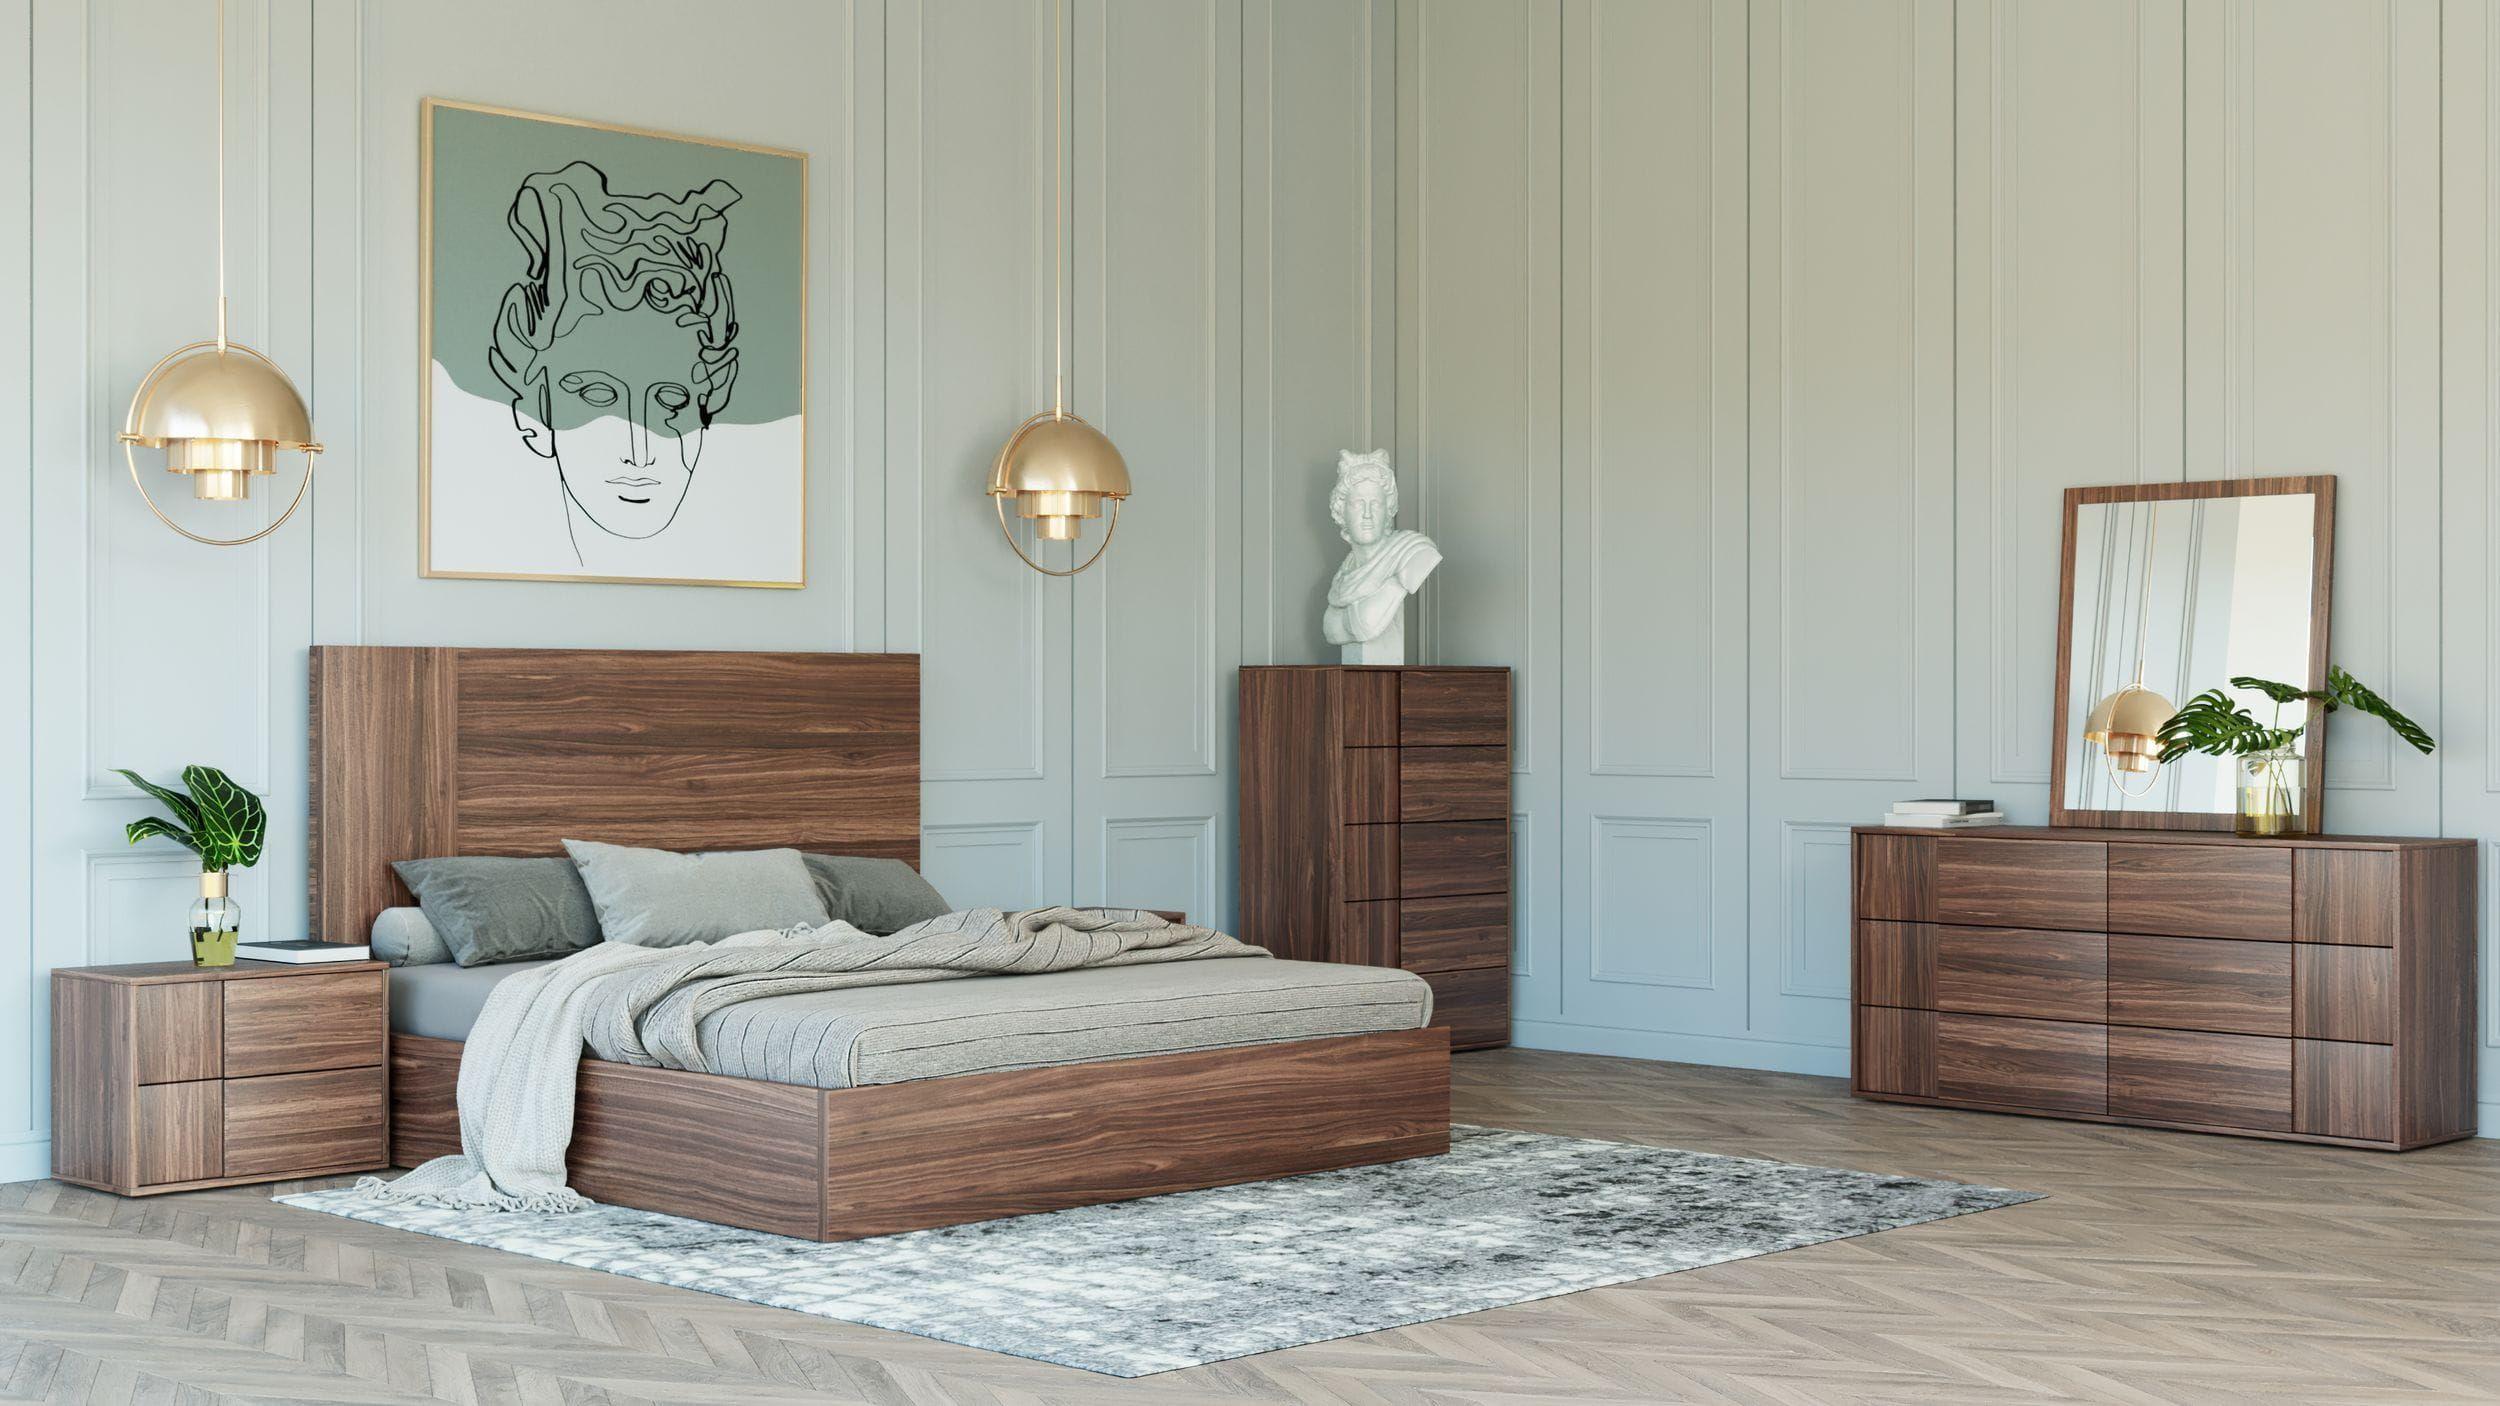 

    
Walnut Queen Size Panel Bedroom Set 6Pcs by VIG Nova Domus Asus
